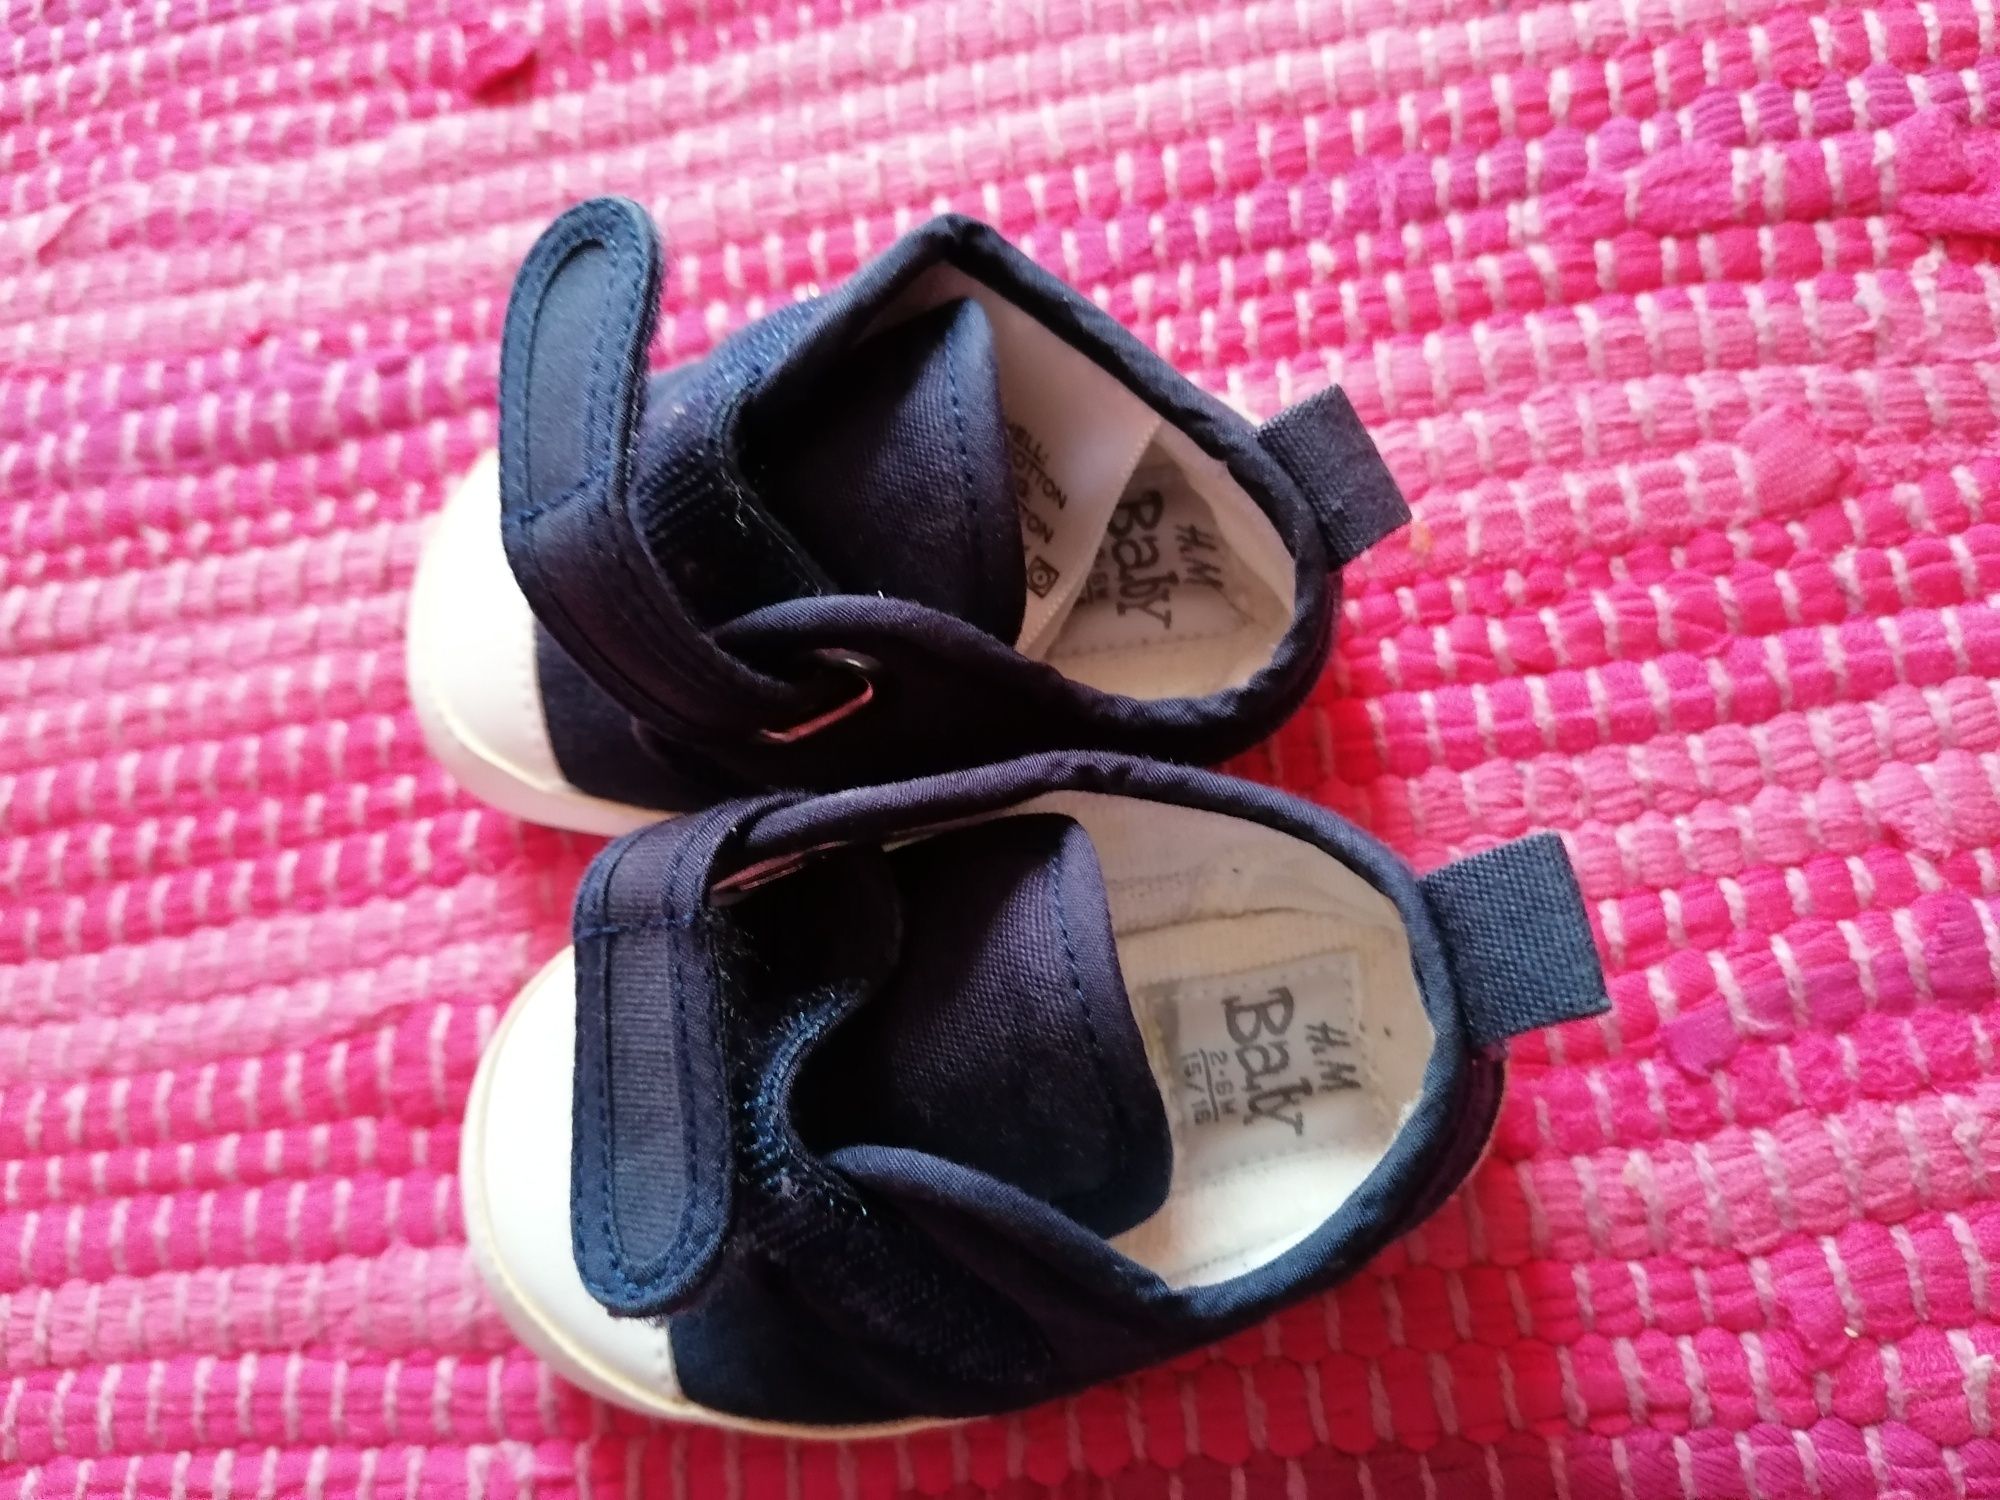 Sapatos bebé, como novos